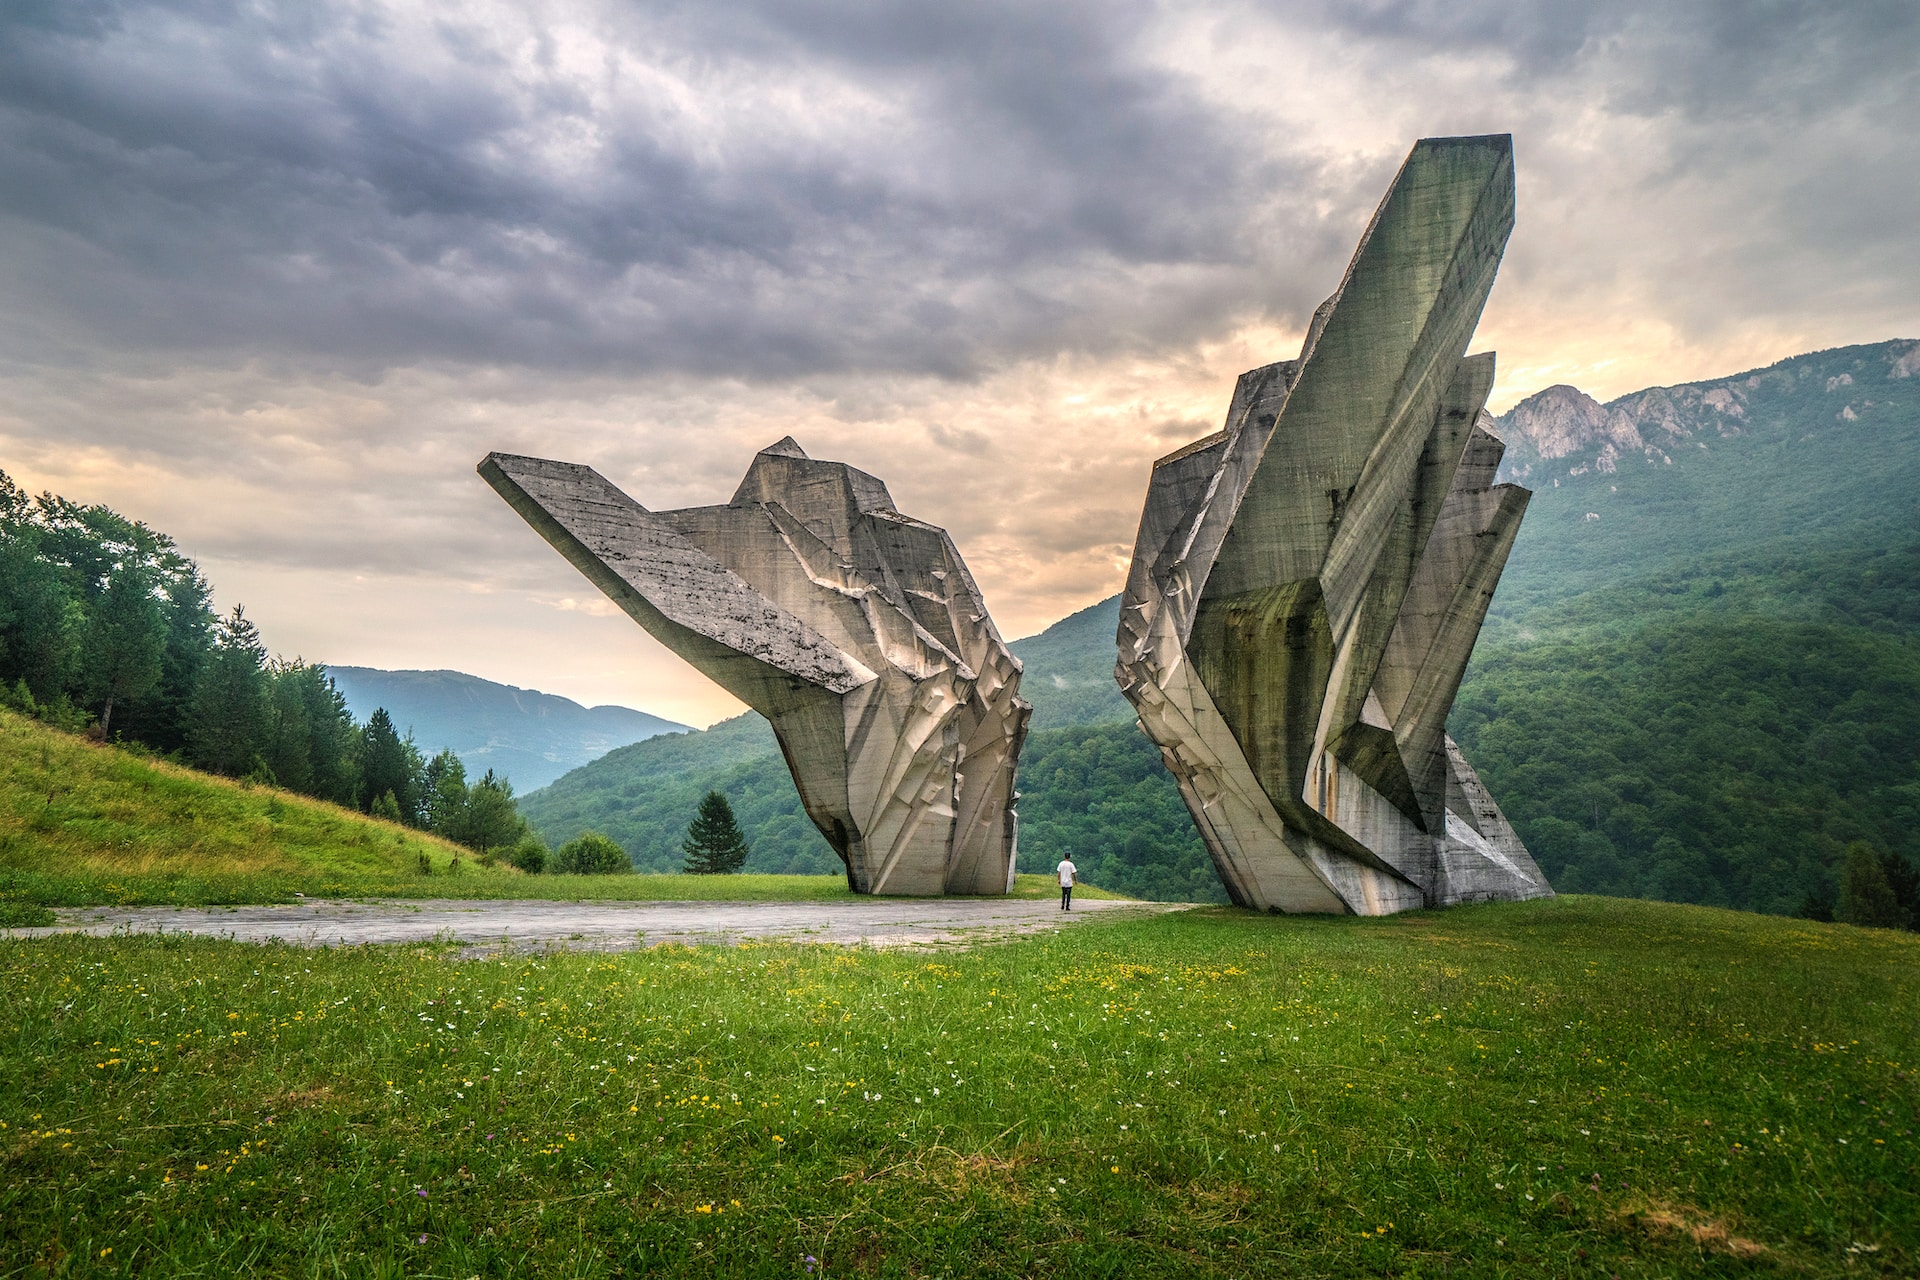 Tjentiste War Memorial in Bosnia and Herzegovina (photo: Luke Vodell)